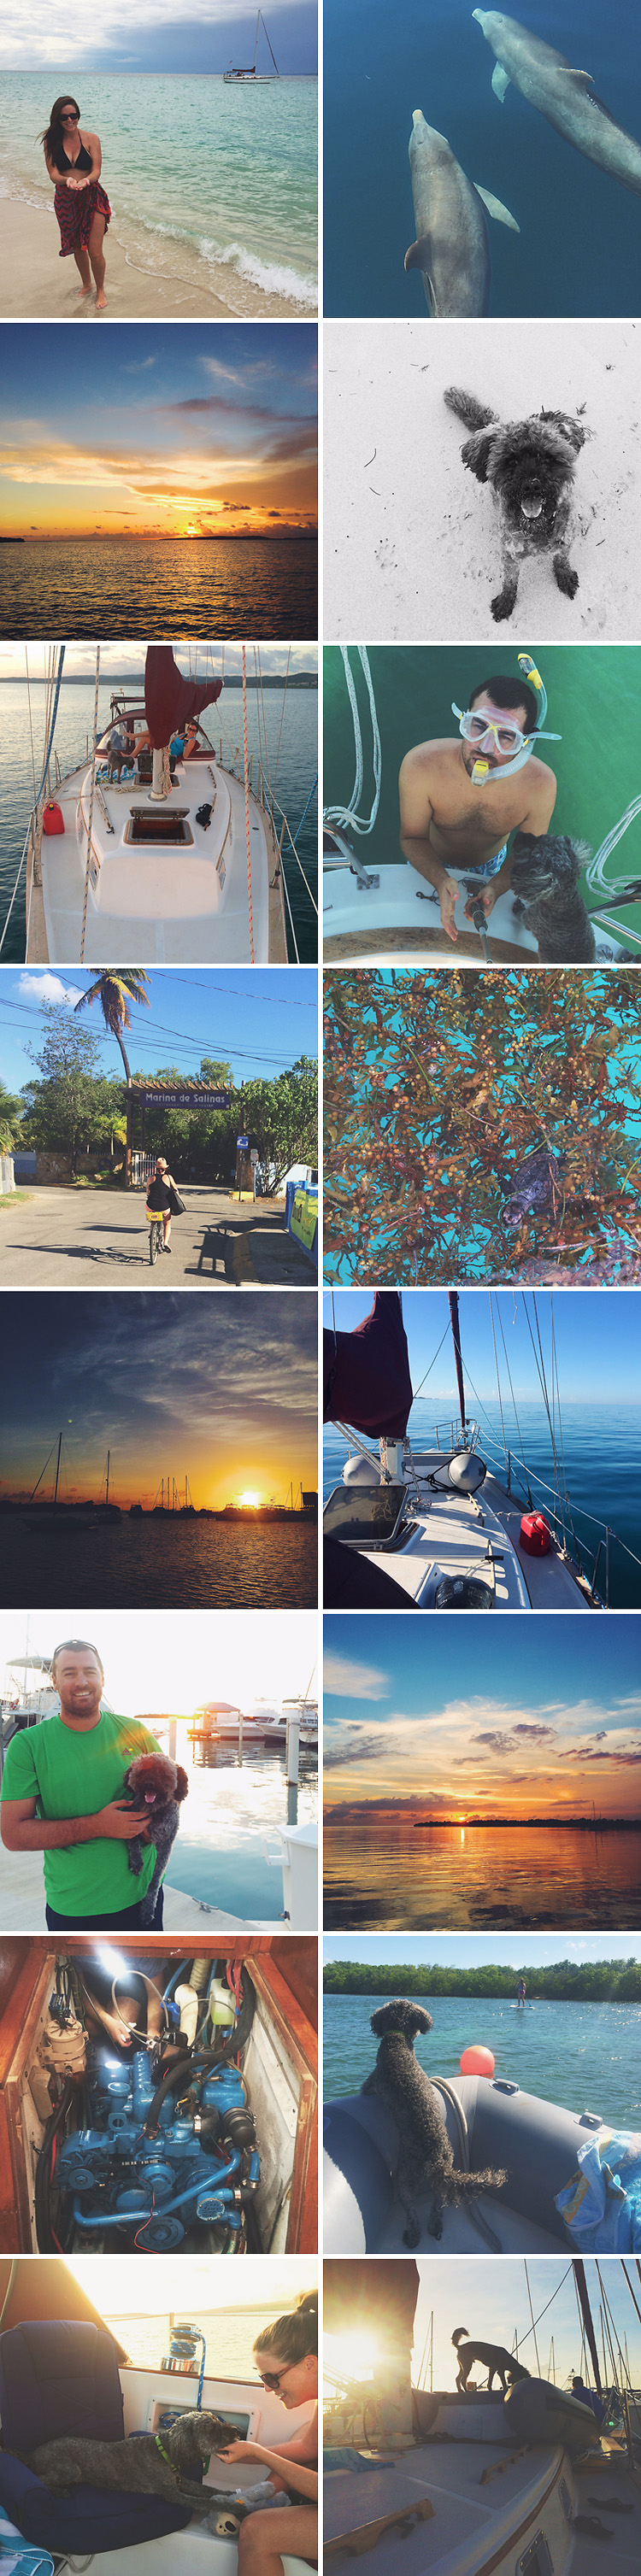 Sailing-Blog-Cruising-Caribbean-Puerto-Rico-Life-Afloat-Boat-Dog-Sailboat-Lahowind-Boat-Life-Lately-November-2014b